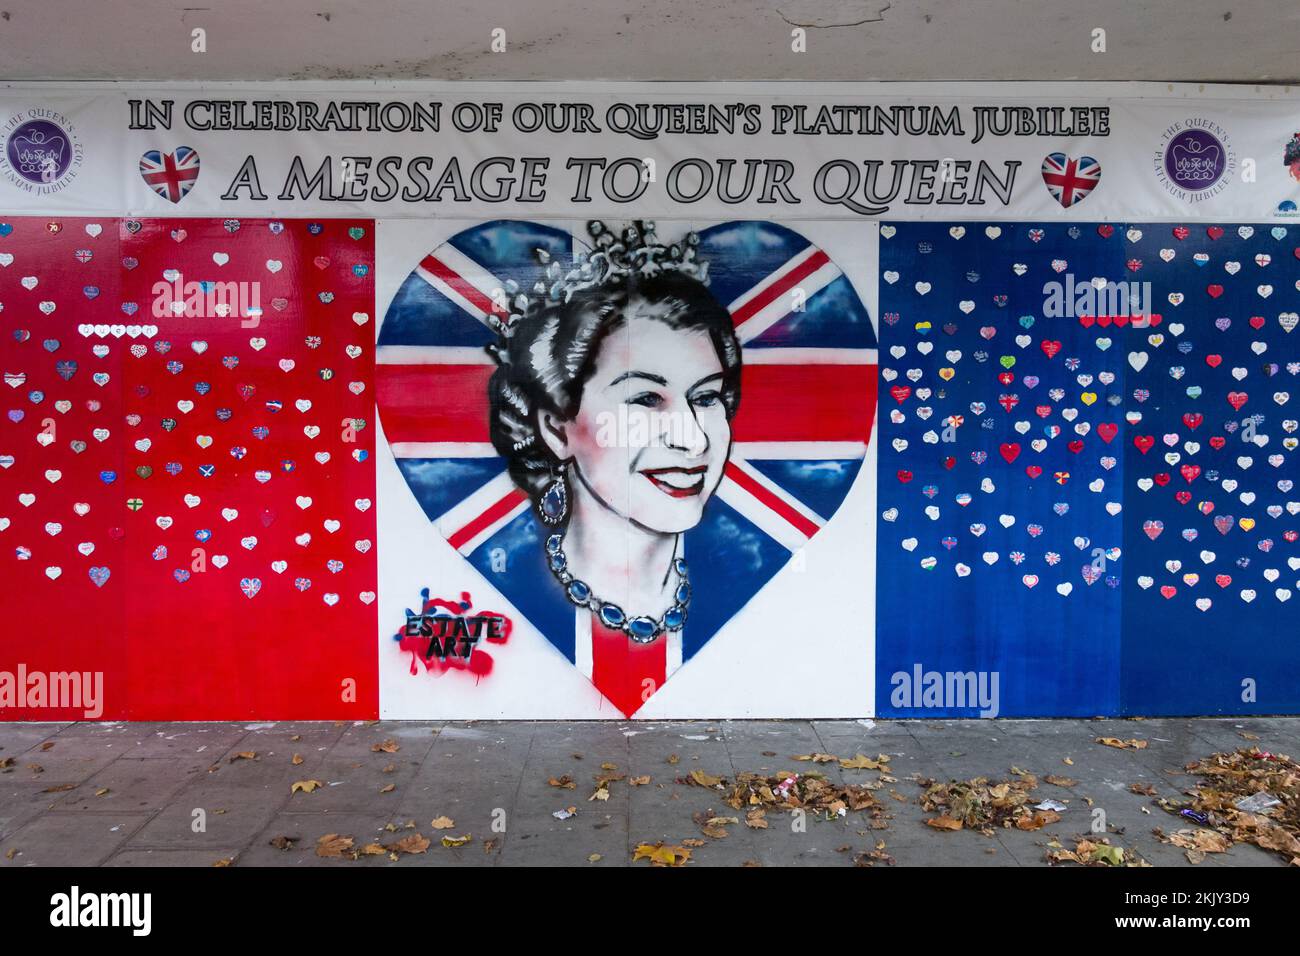 Un message à notre Reine - en célébration de l'art de rue de notre Dame Platinum Jubilee à Roehampton, Londres, SW15, Angleterre, Royaume-Uni Banque D'Images